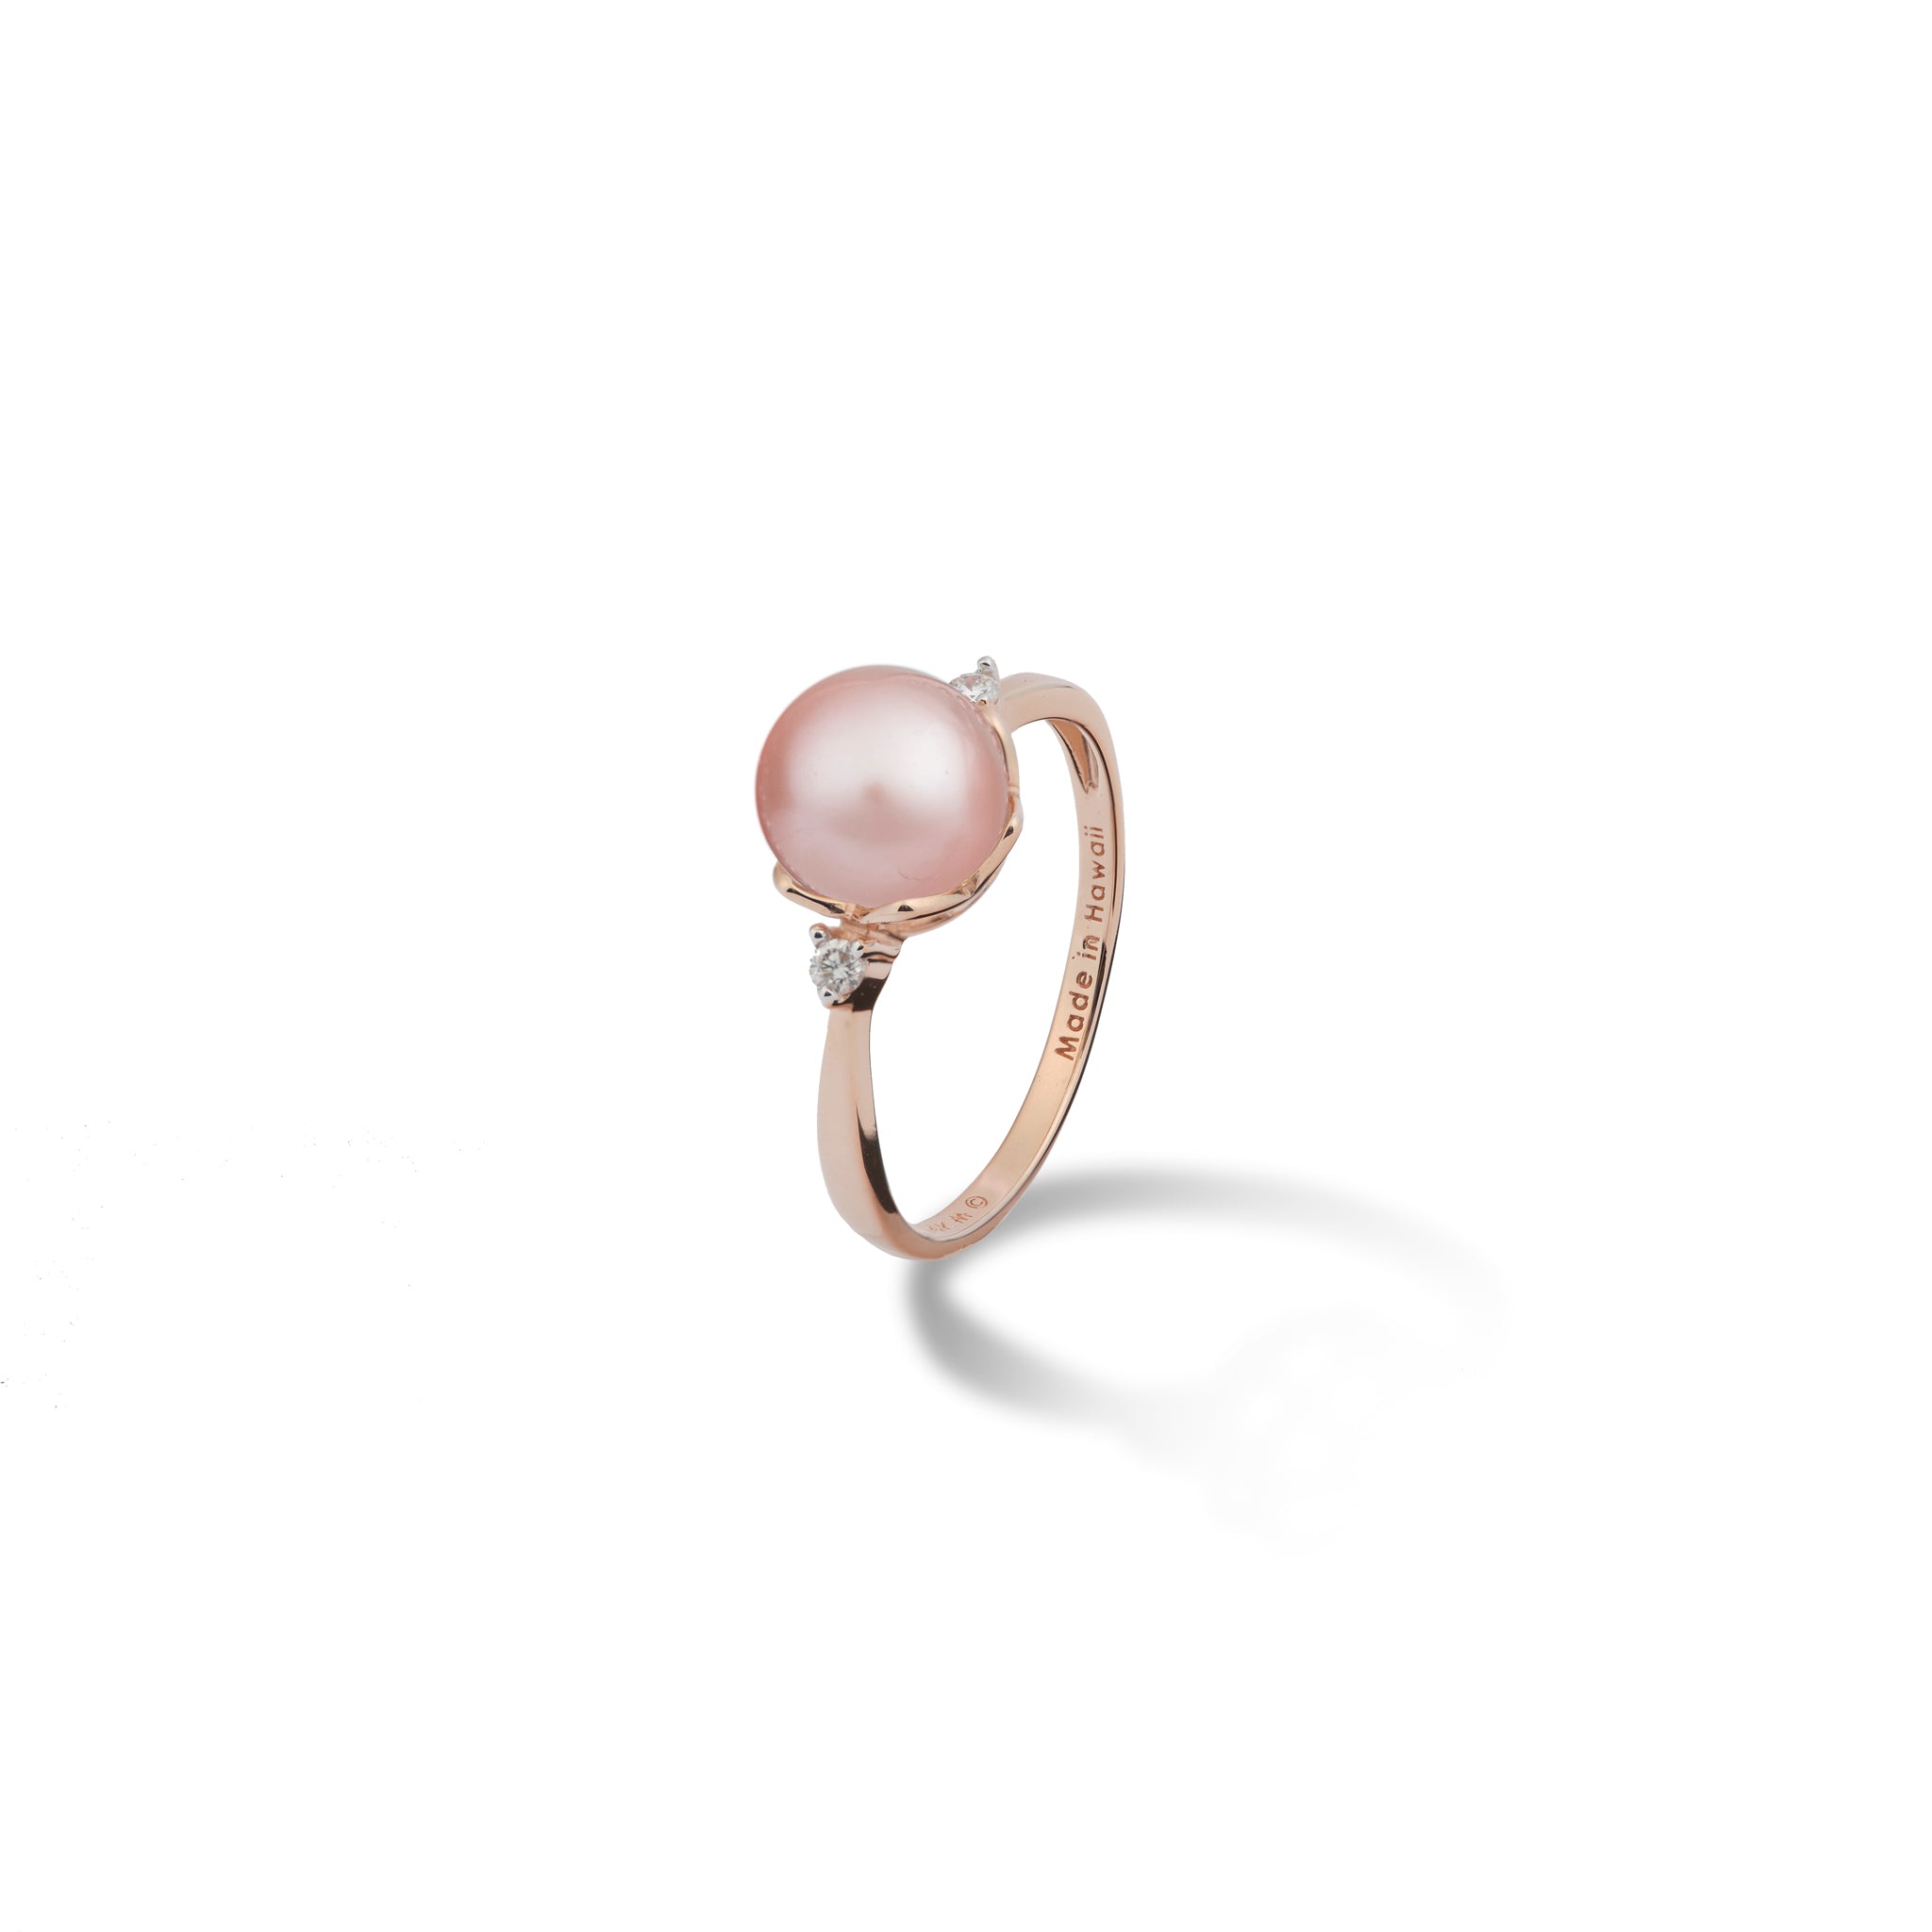 Choisissez un anneau de couronne perle en or rose avec des diamants